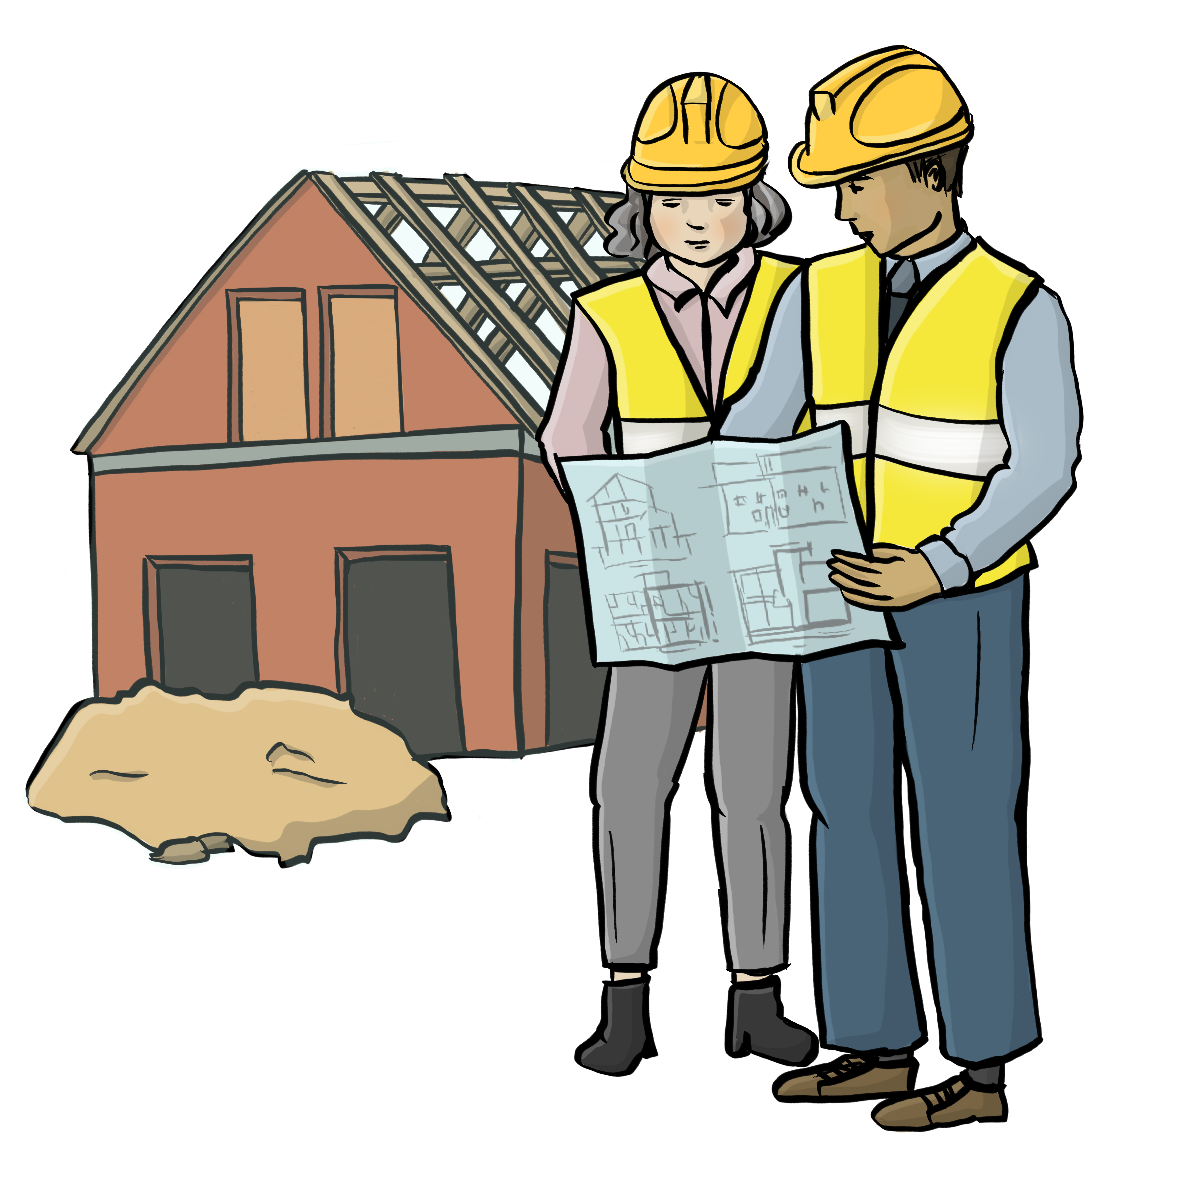 Zwei Bauingenieure stehen auf einer Baustelle. Eine Frau und ein Mann. Sie lesen einen Bauplan.